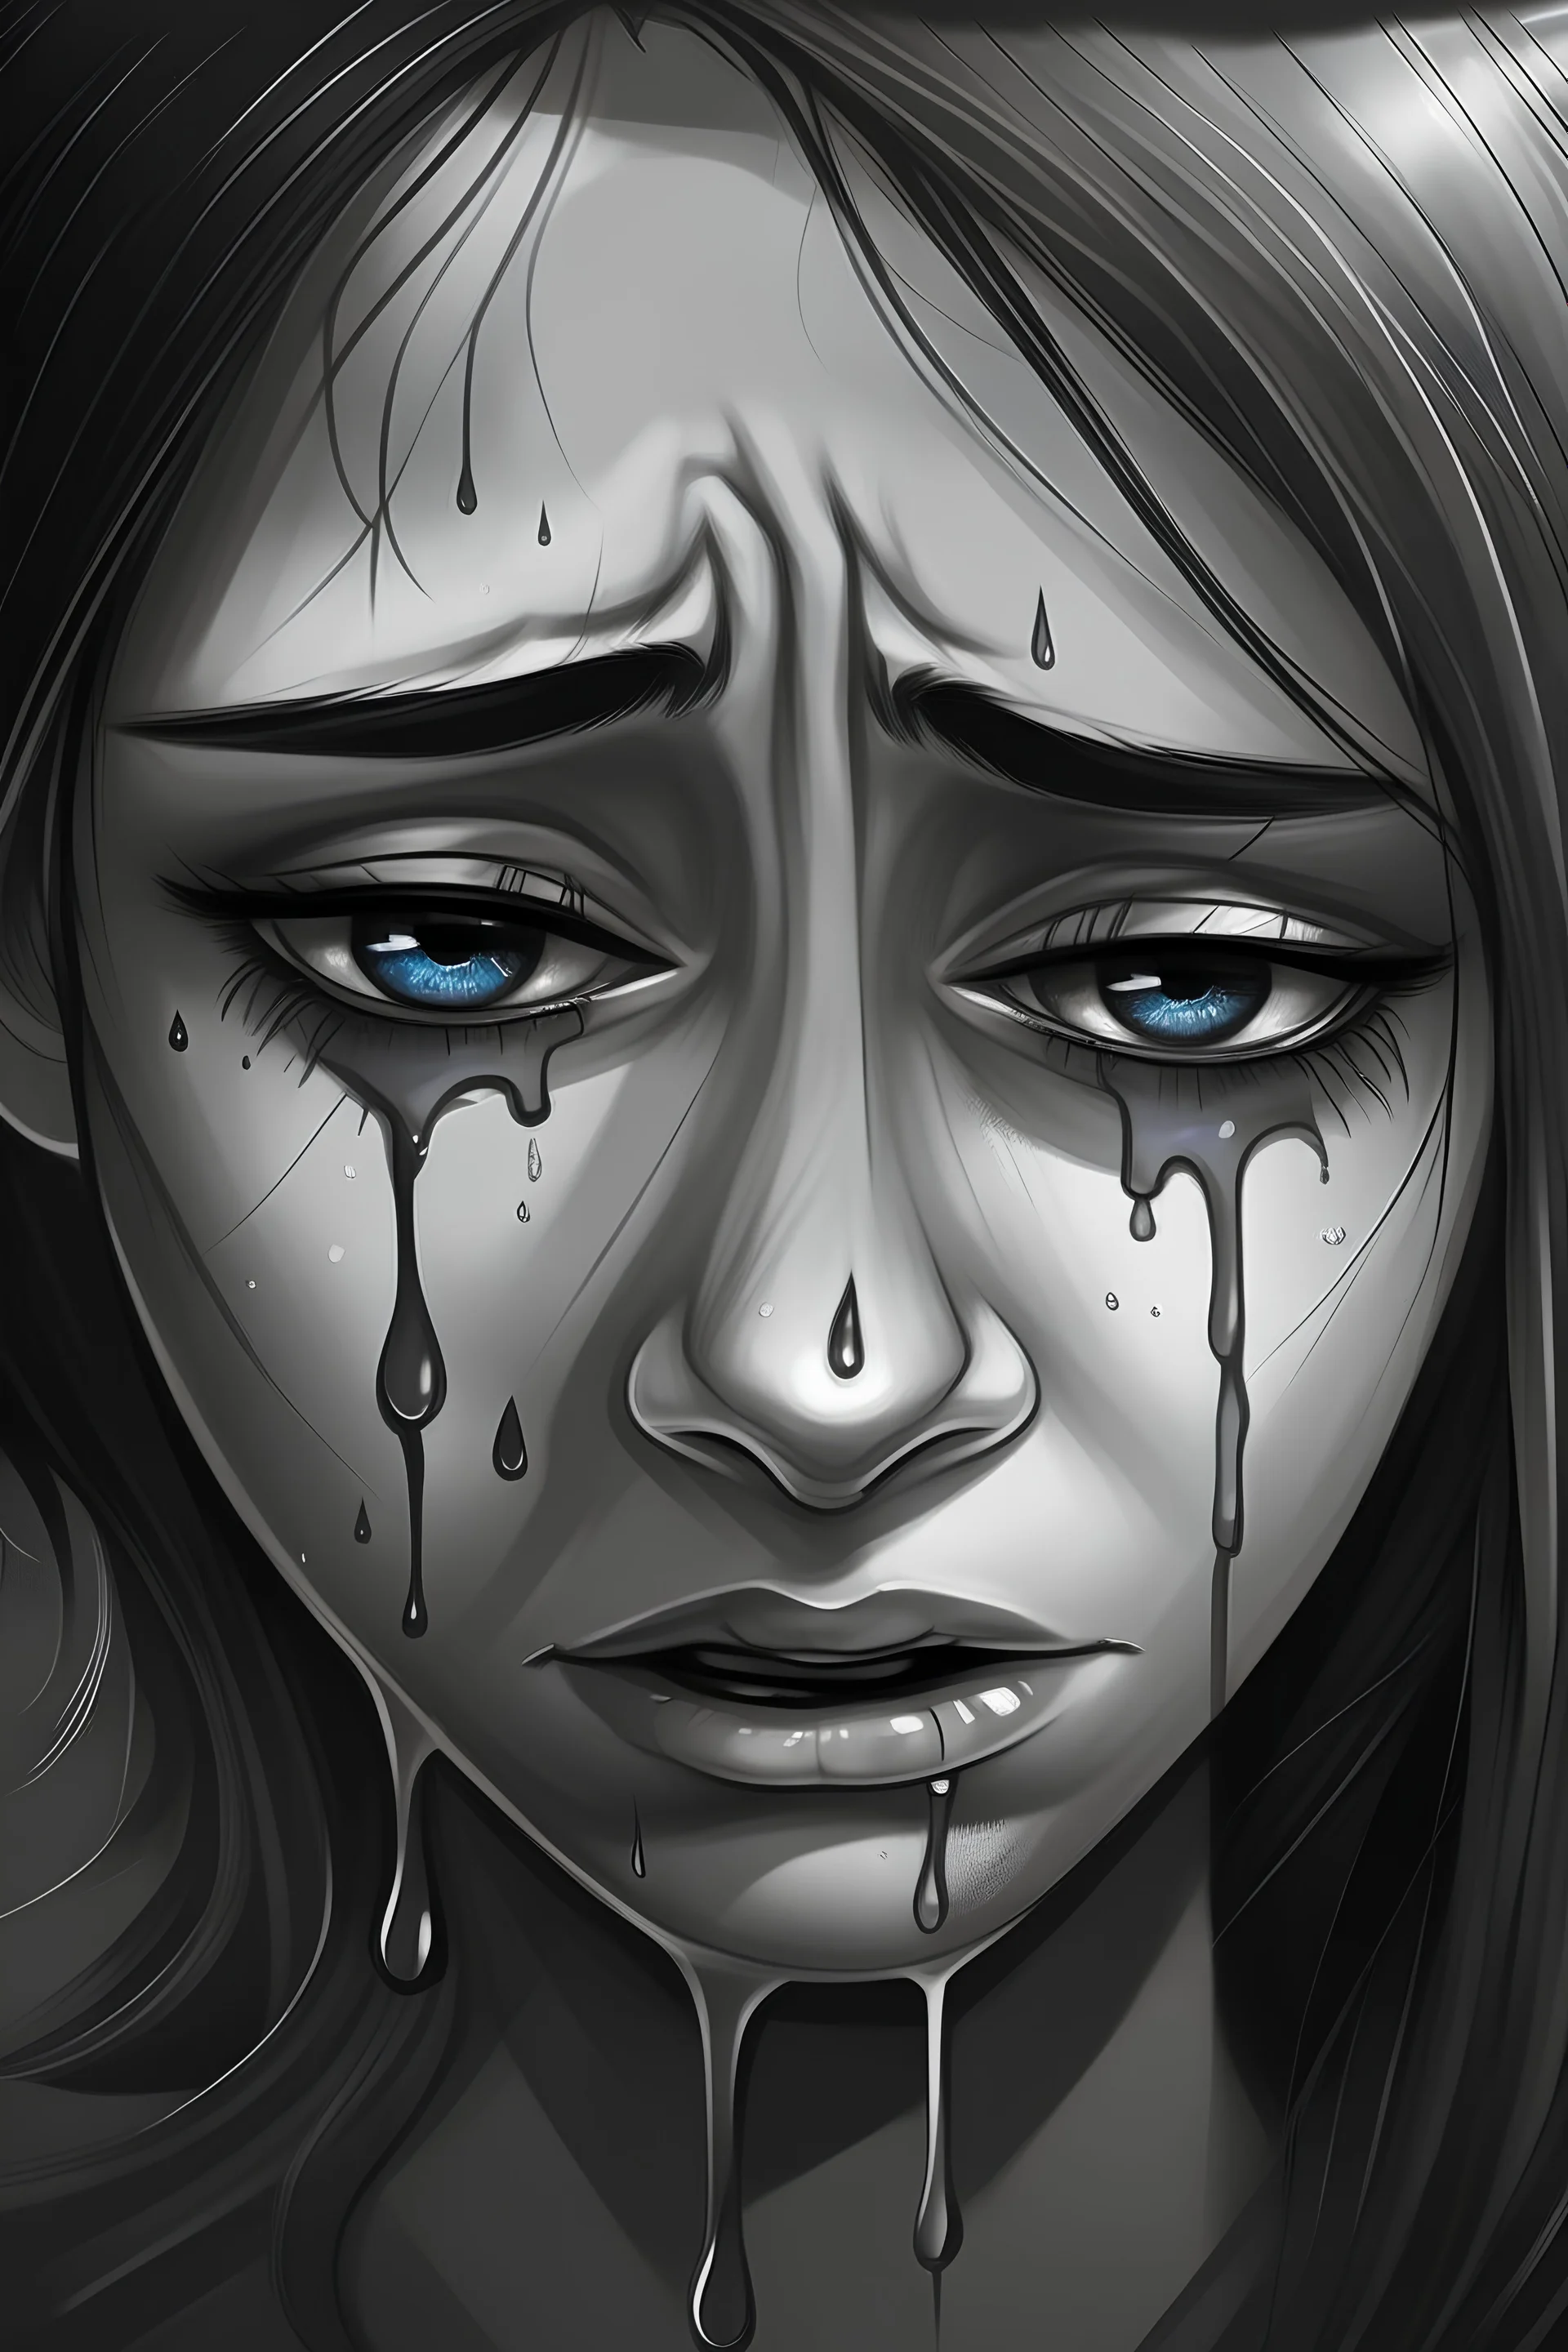 תמונה של דמעות עצובות